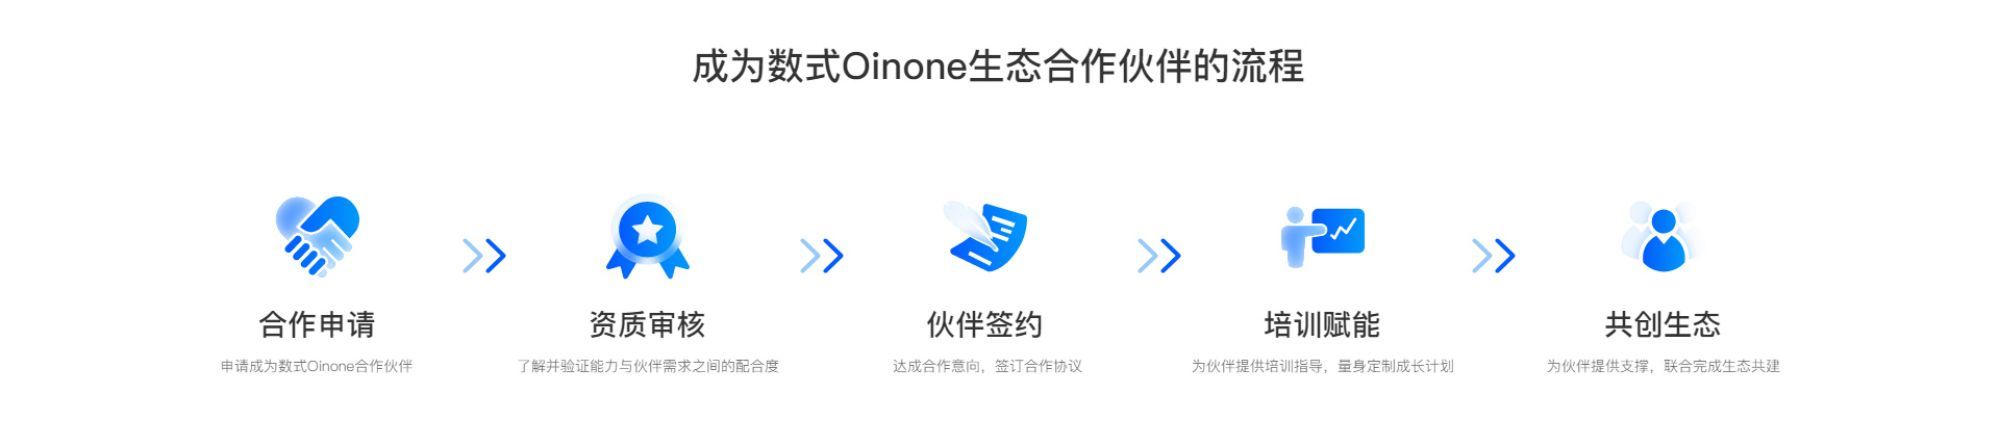 Oinone低代码开发平台